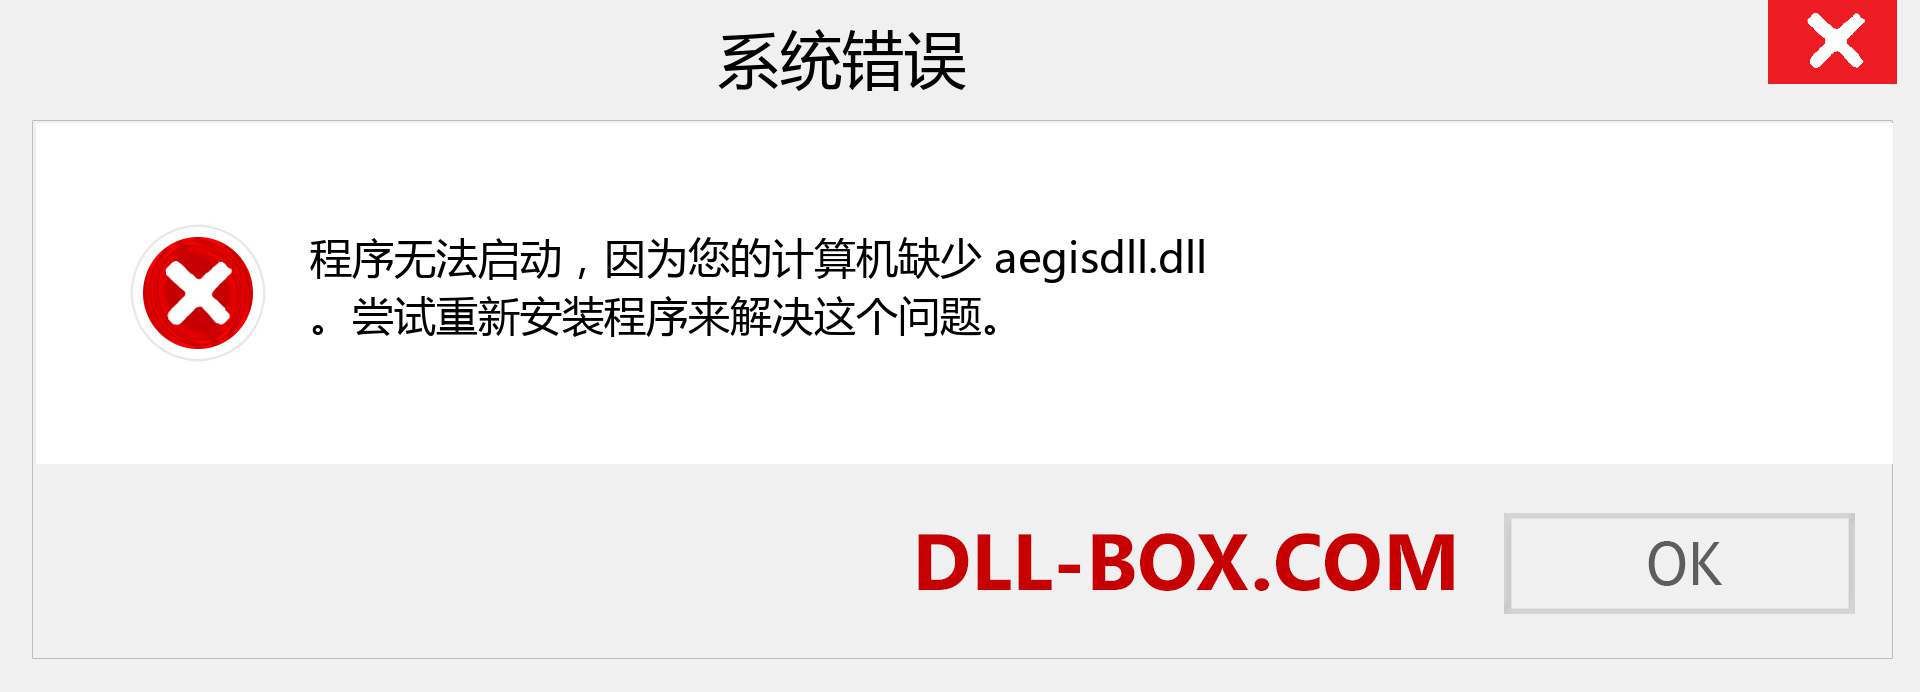 aegisdll.dll 文件丢失？。 适用于 Windows 7、8、10 的下载 - 修复 Windows、照片、图像上的 aegisdll dll 丢失错误